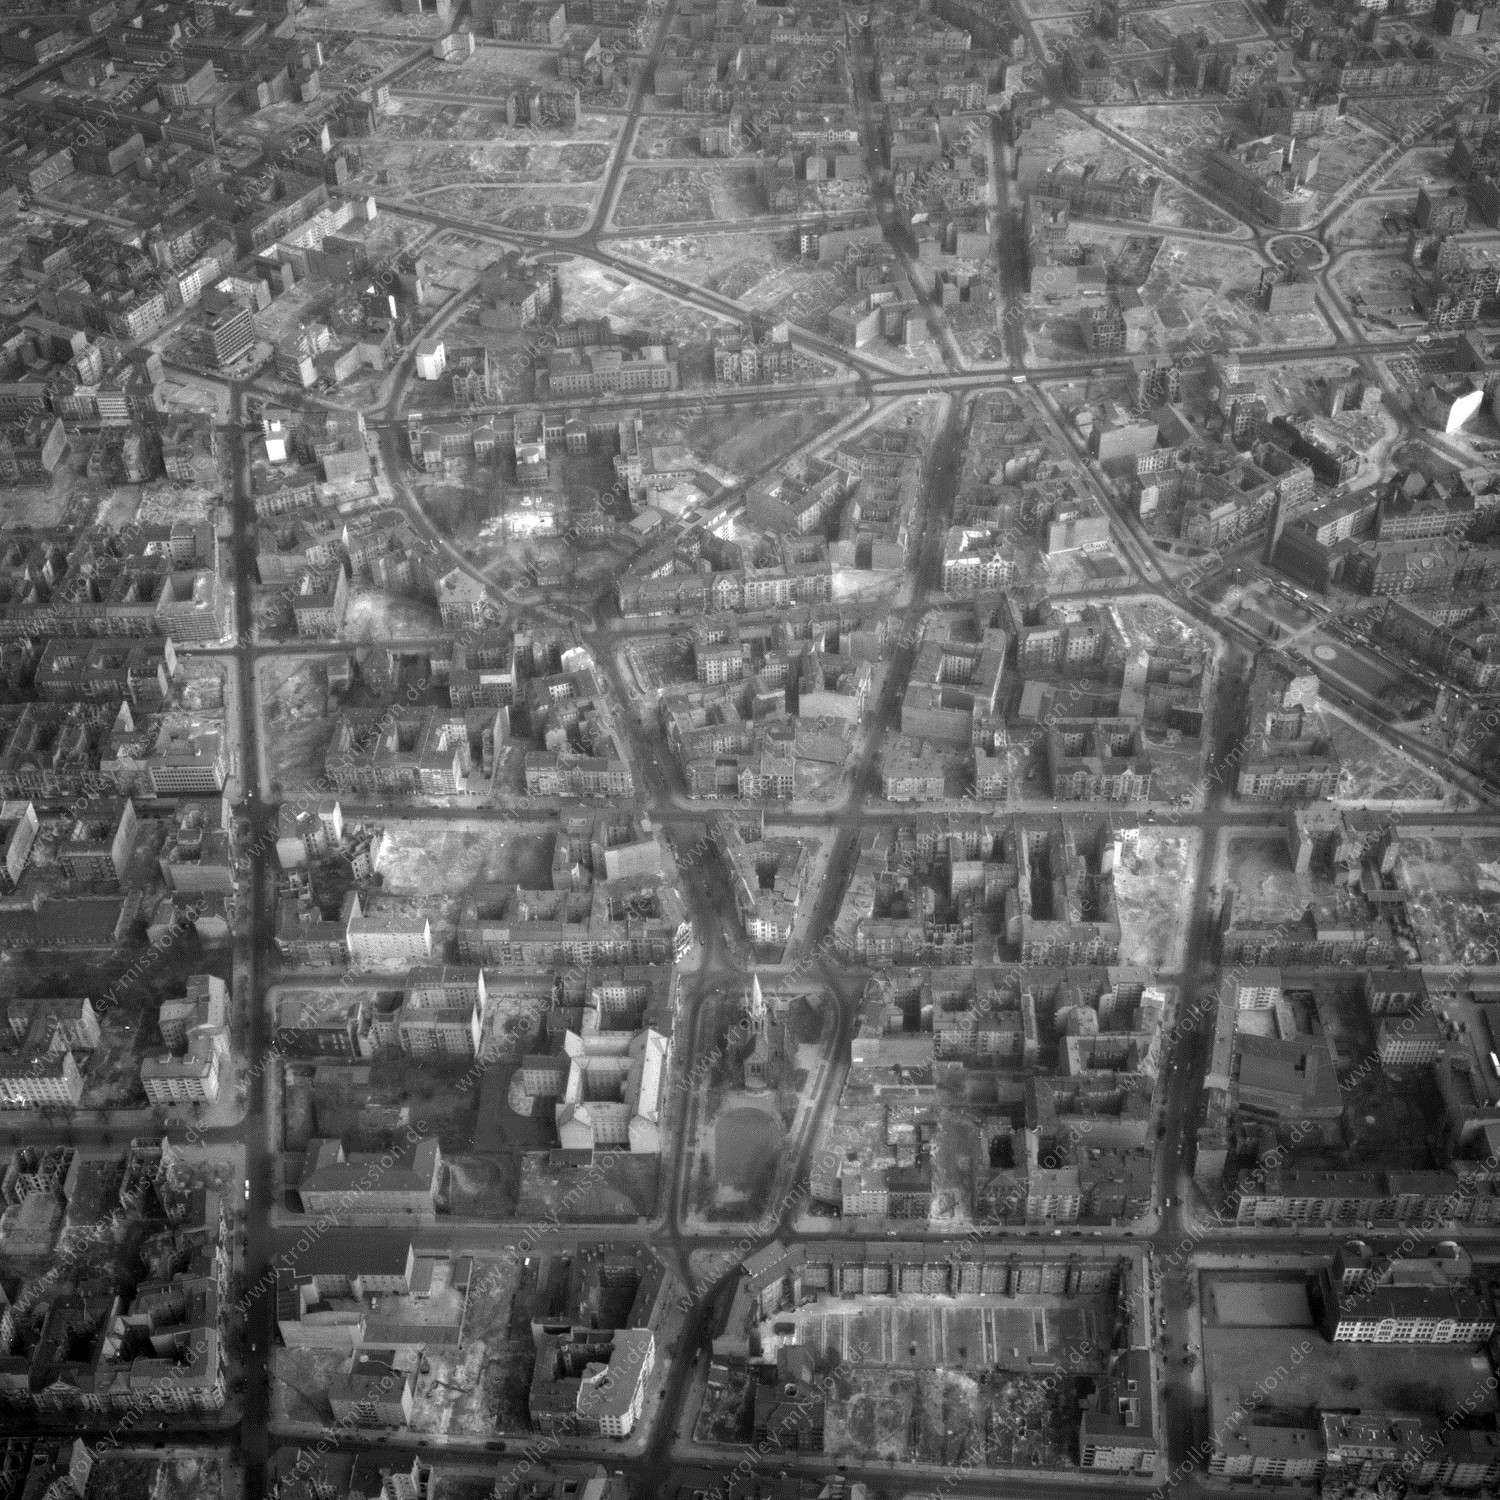 Alte Fotos und Luftbilder von Berlin - Luftbildaufnahme Nr. 09 - Historische Luftaufnahmen von West-Berlin aus dem Jahr 1954 - Flugstrecke Delta